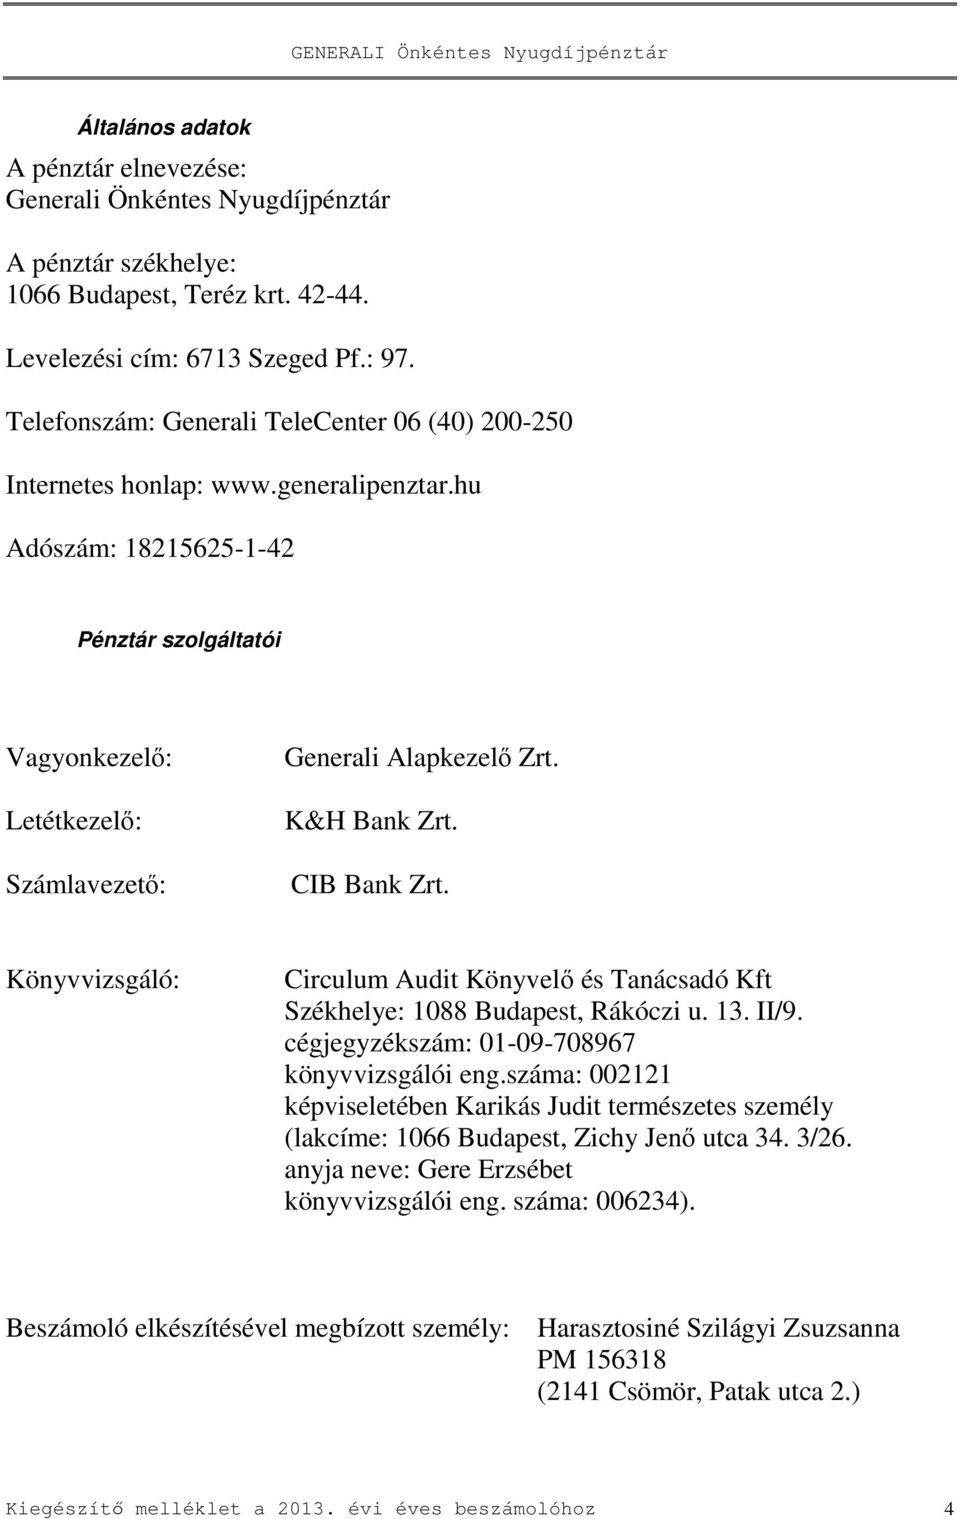 K&H Bank Zrt. CIB Bank Zrt. Könyvvizsgáló: Circulum Audit Könyvelő és Tanácsadó Kft Székhelye: 1088 Budapest, Rákóczi u. 13. II/9. cégjegyzékszám: 01-09-708967 könyvvizsgálói eng.